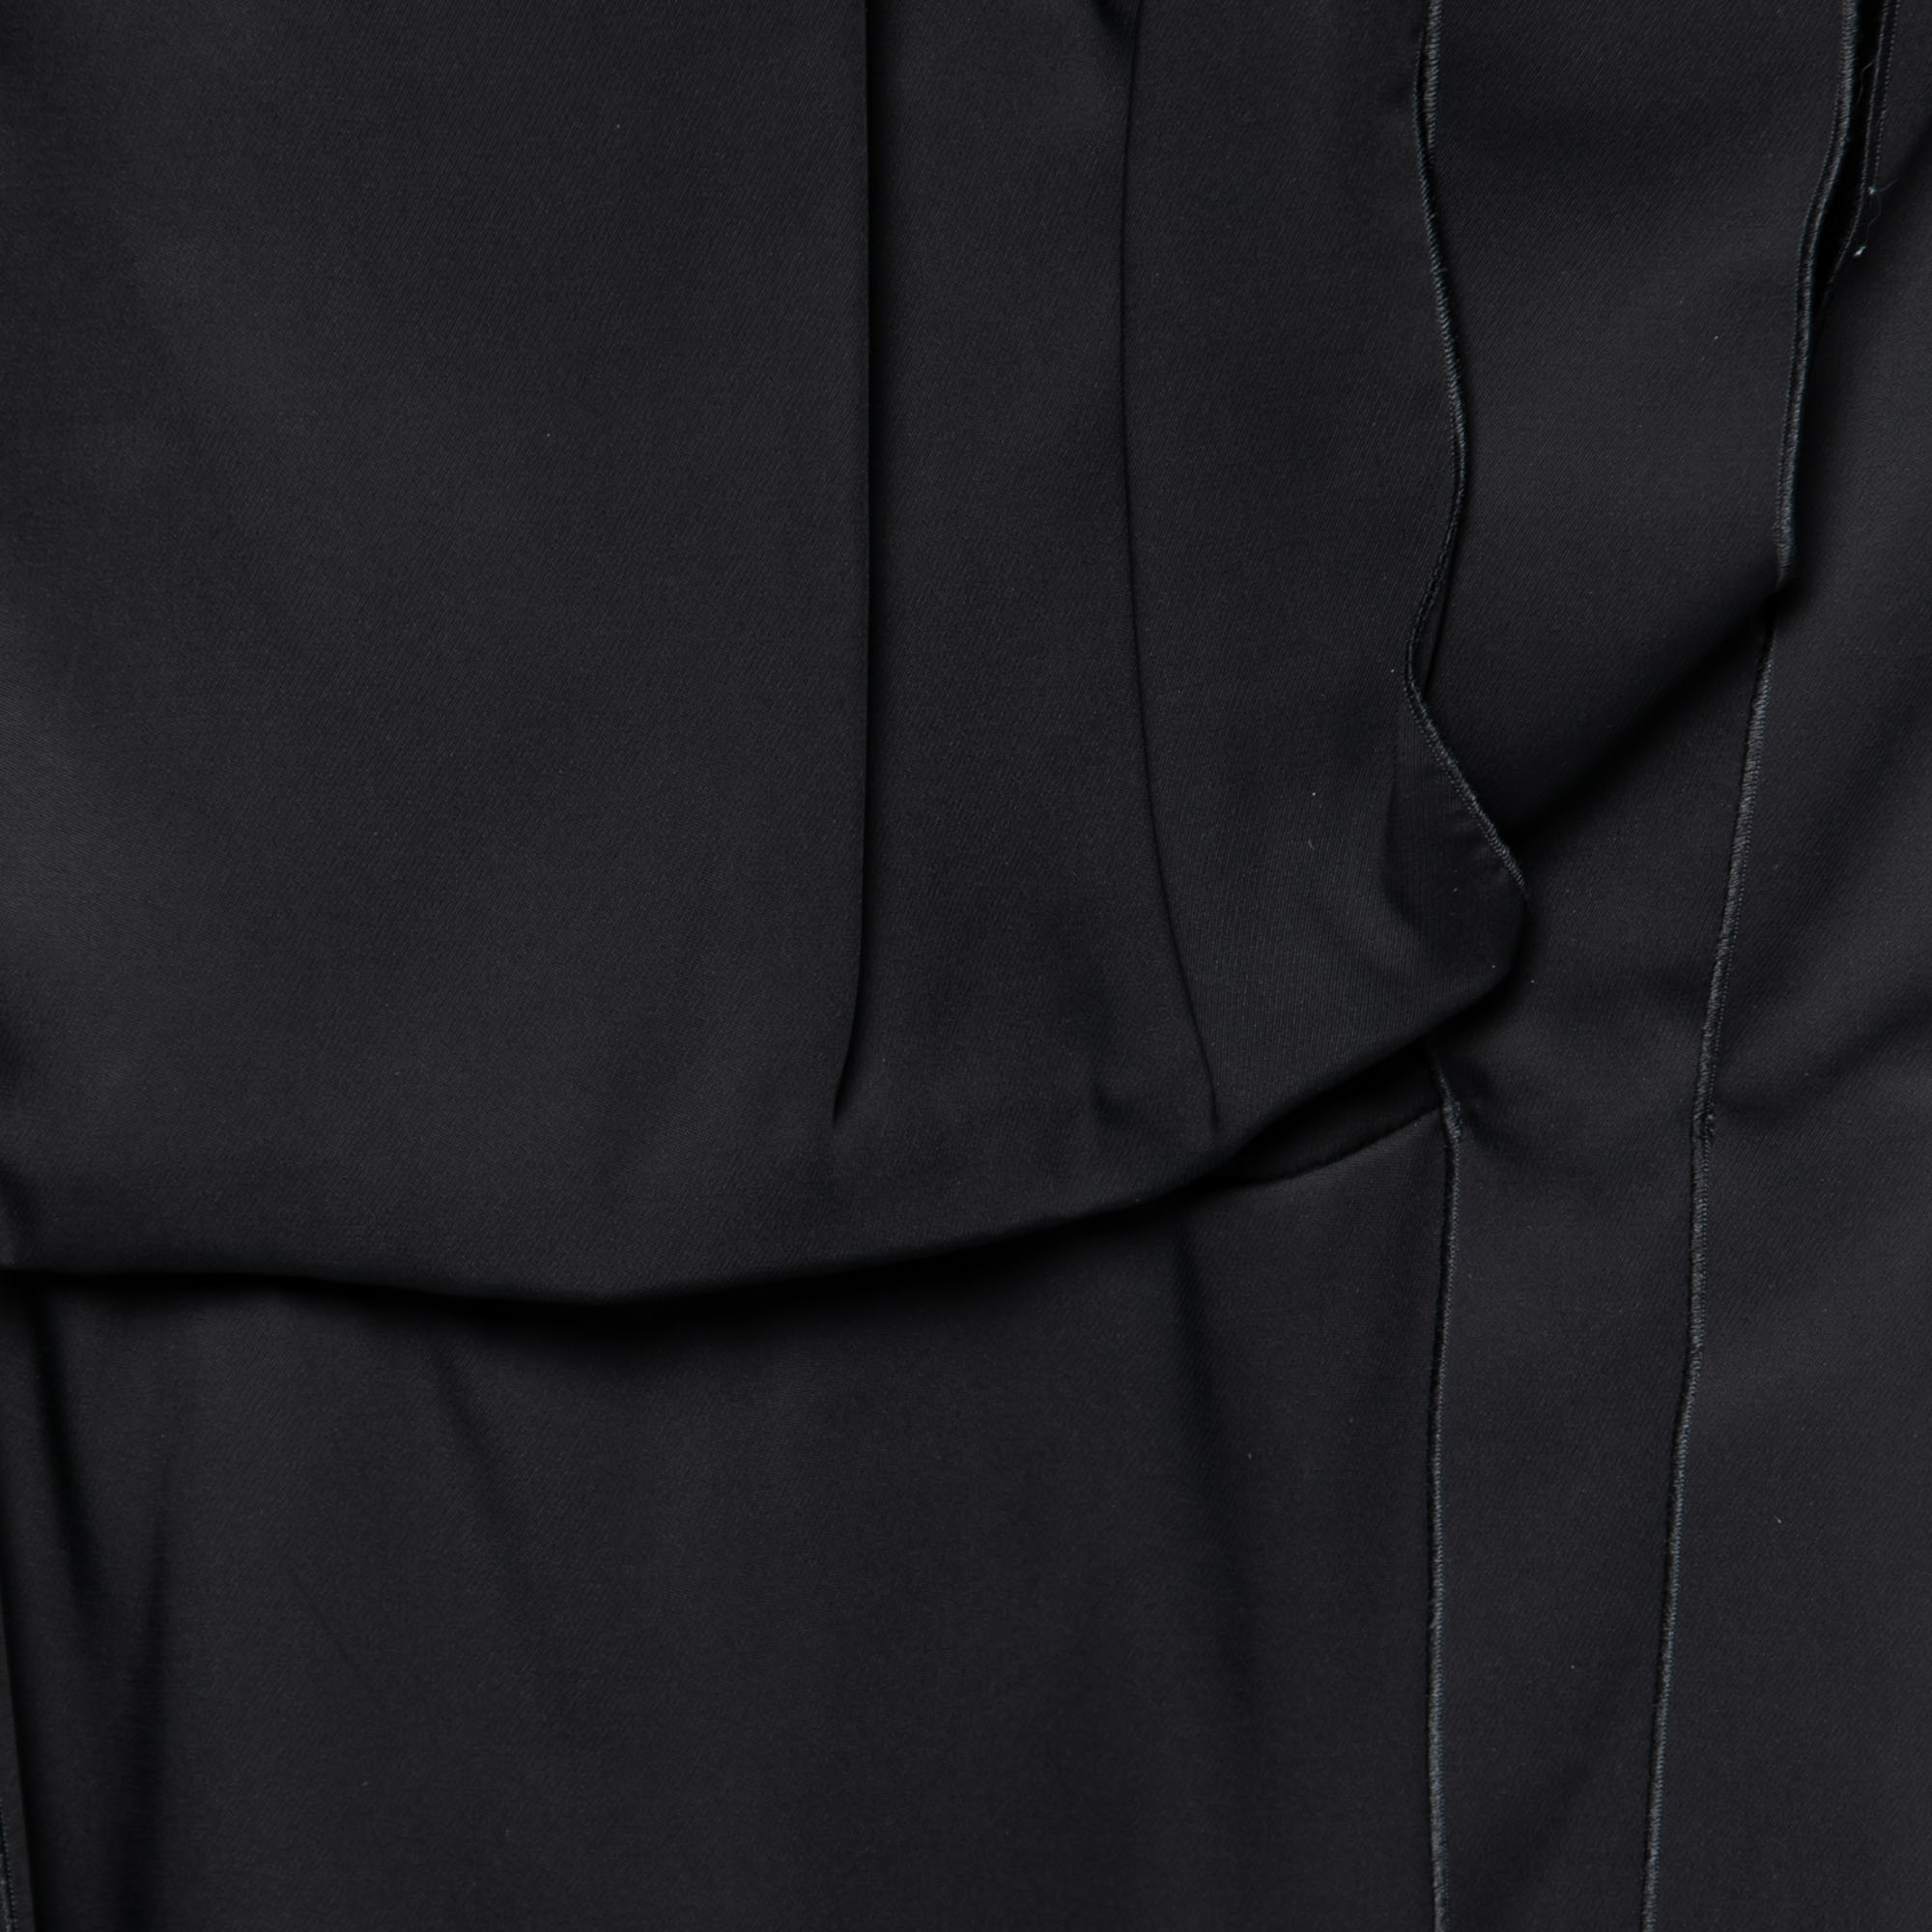 Bottega Veneta Black Synthetic Pleated Fringe Strapless Dress S